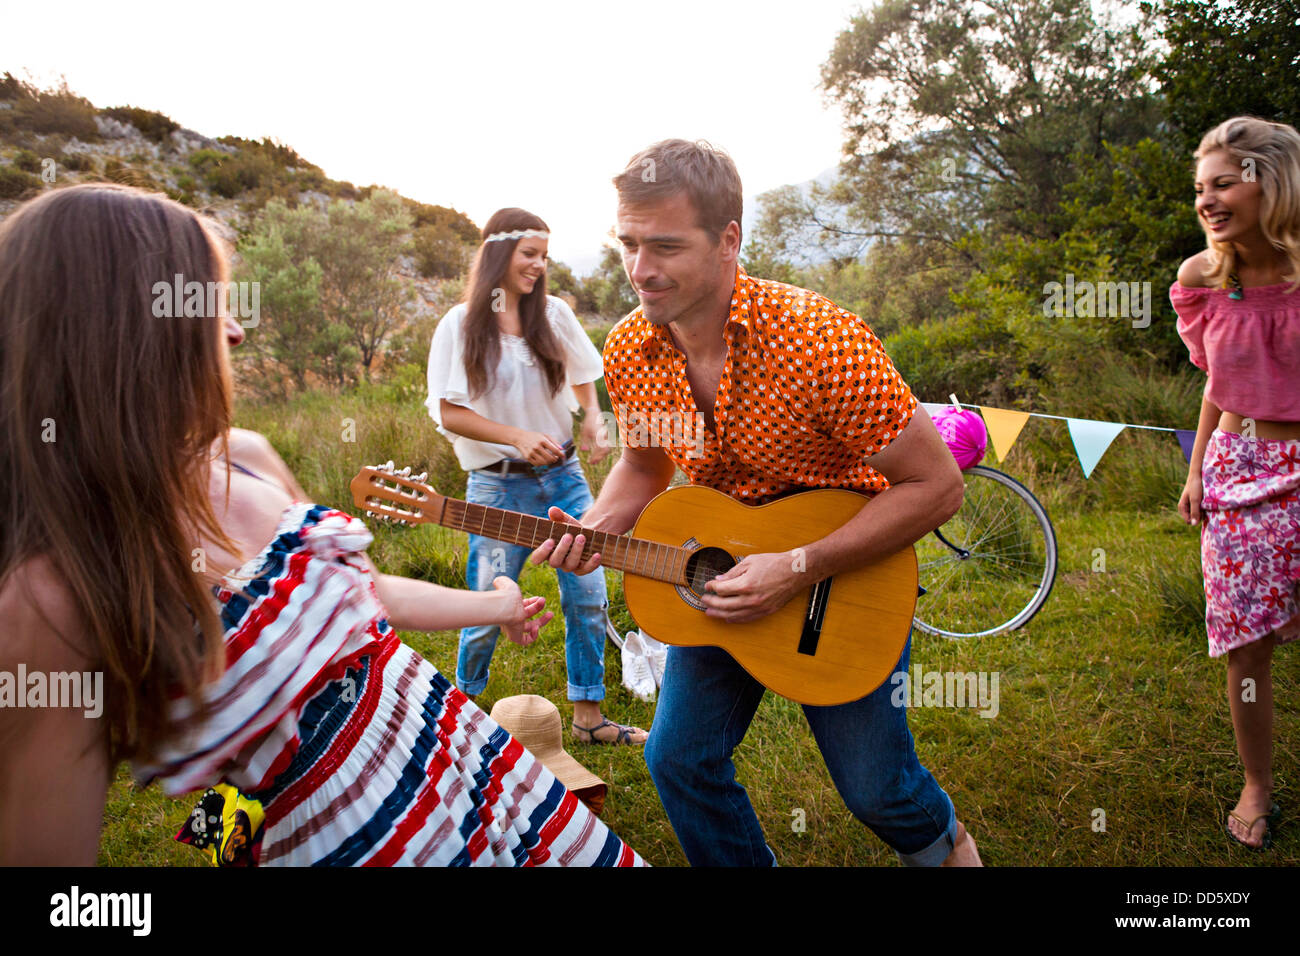 Croatia, Dalmatia, Young women dancing outdoors, man playing guitar Stock Photo